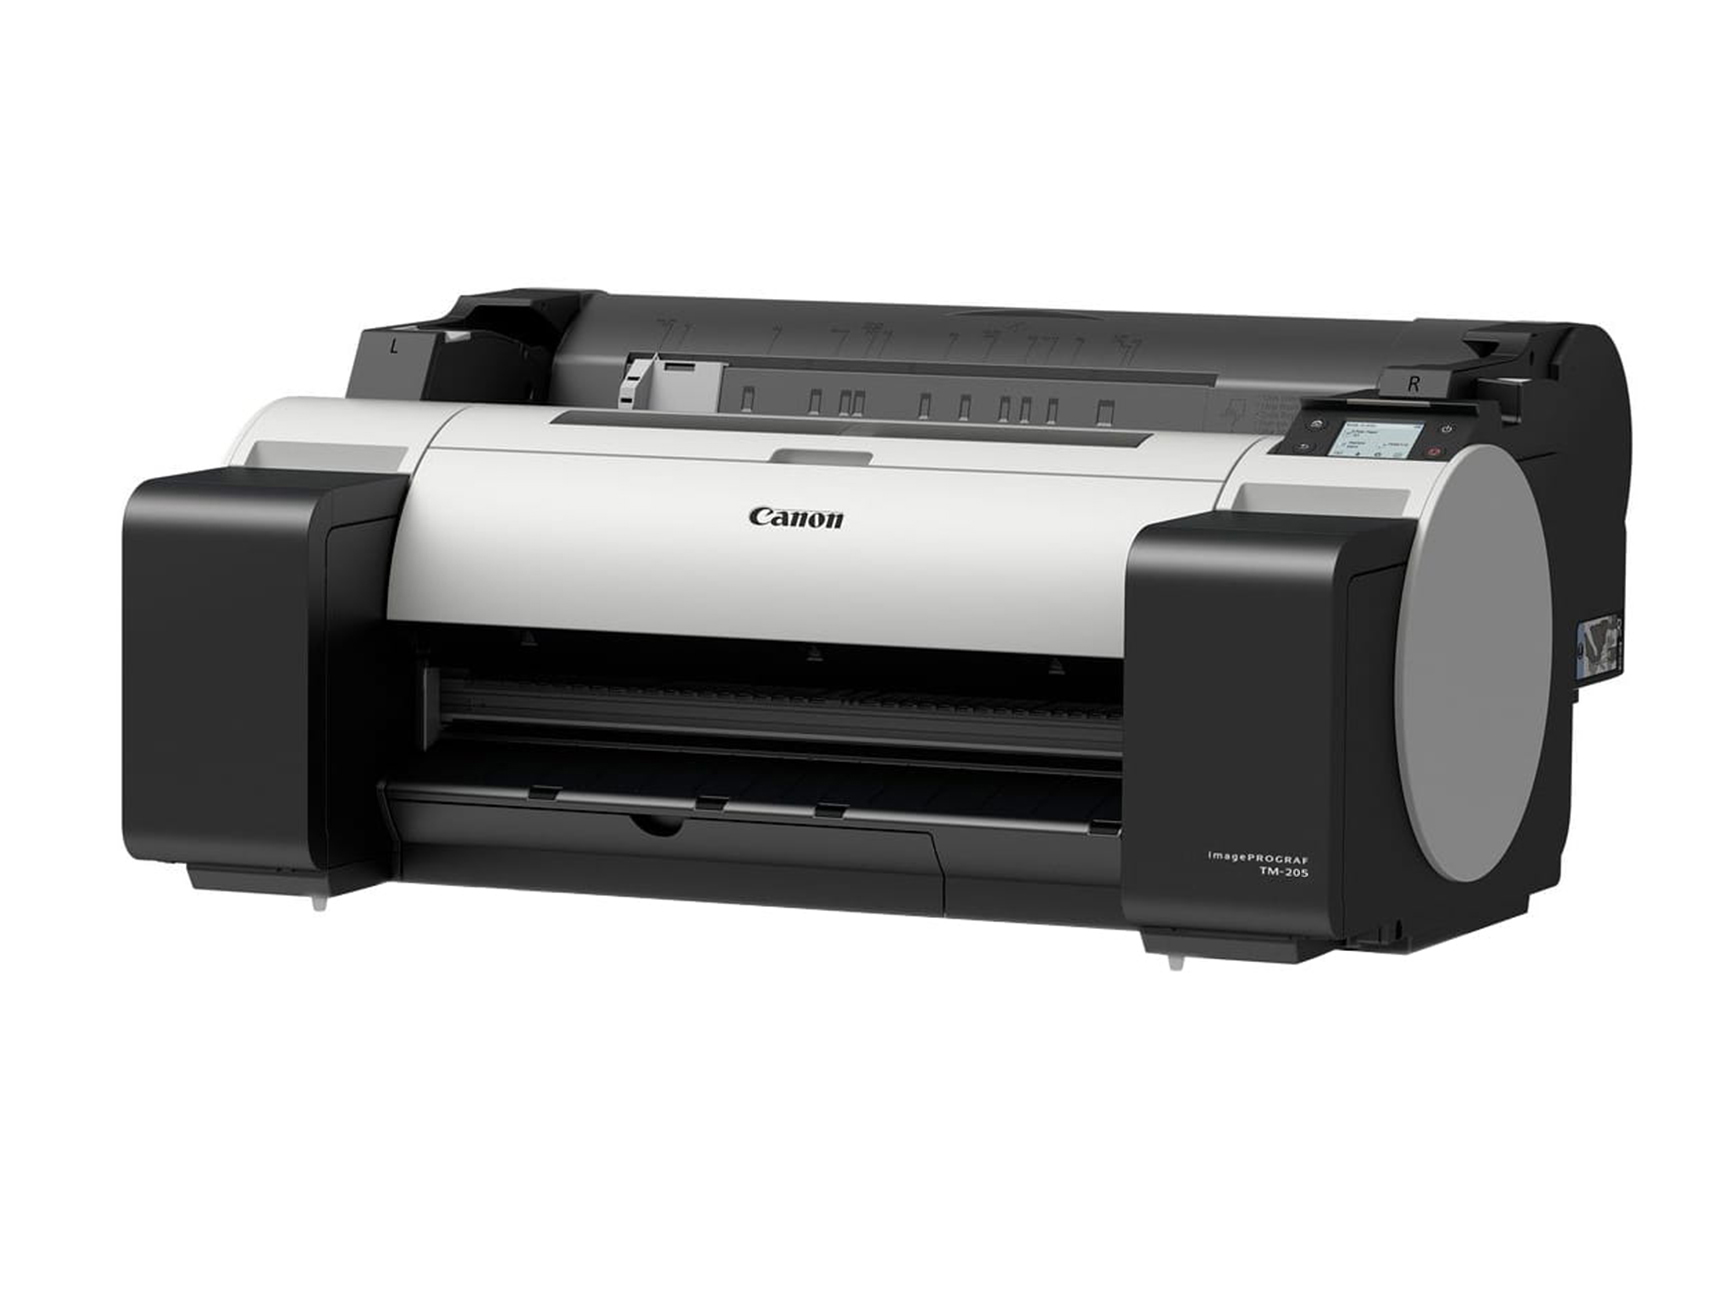 цветной принтер Canon imagePROGRAF TM-205